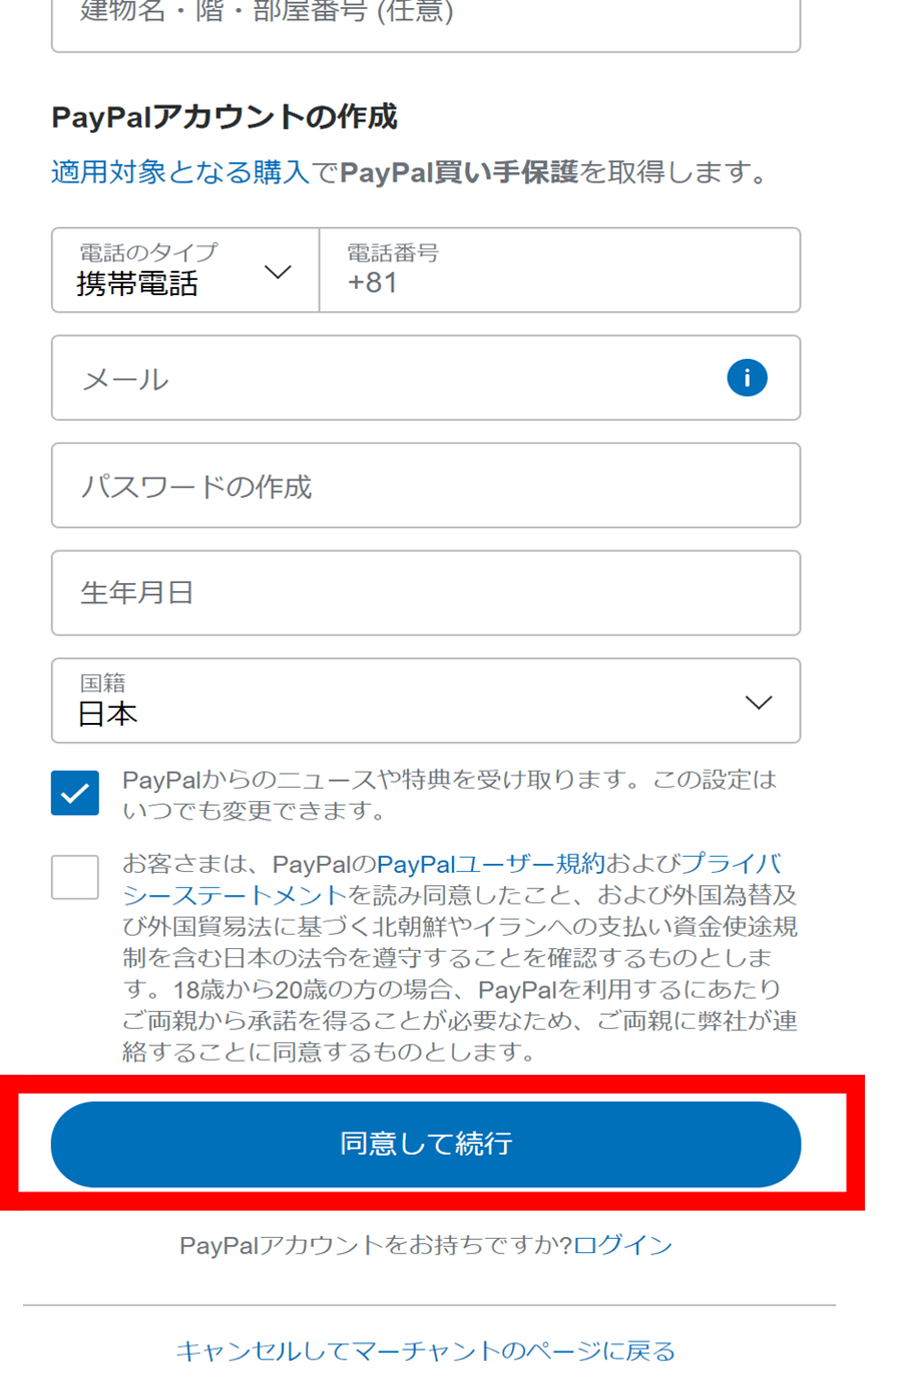 PayPal新規登録画面